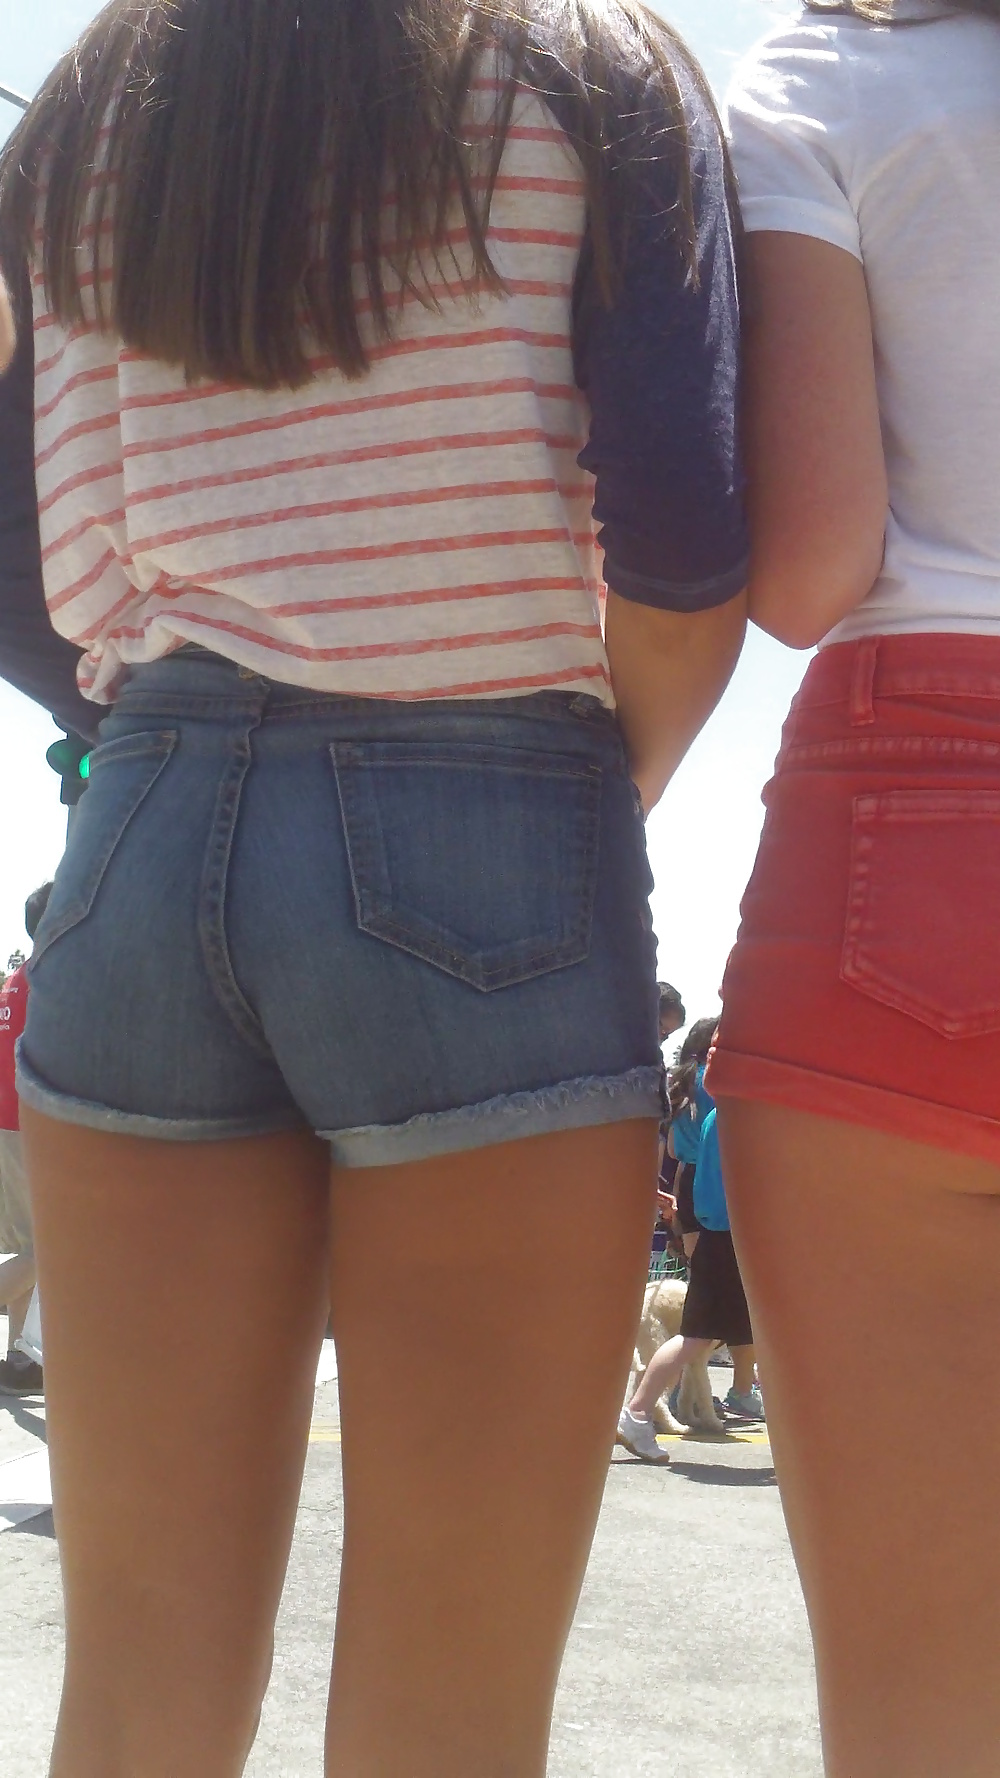 Popular teen girls ass & butt in jeans part 4  #26741895